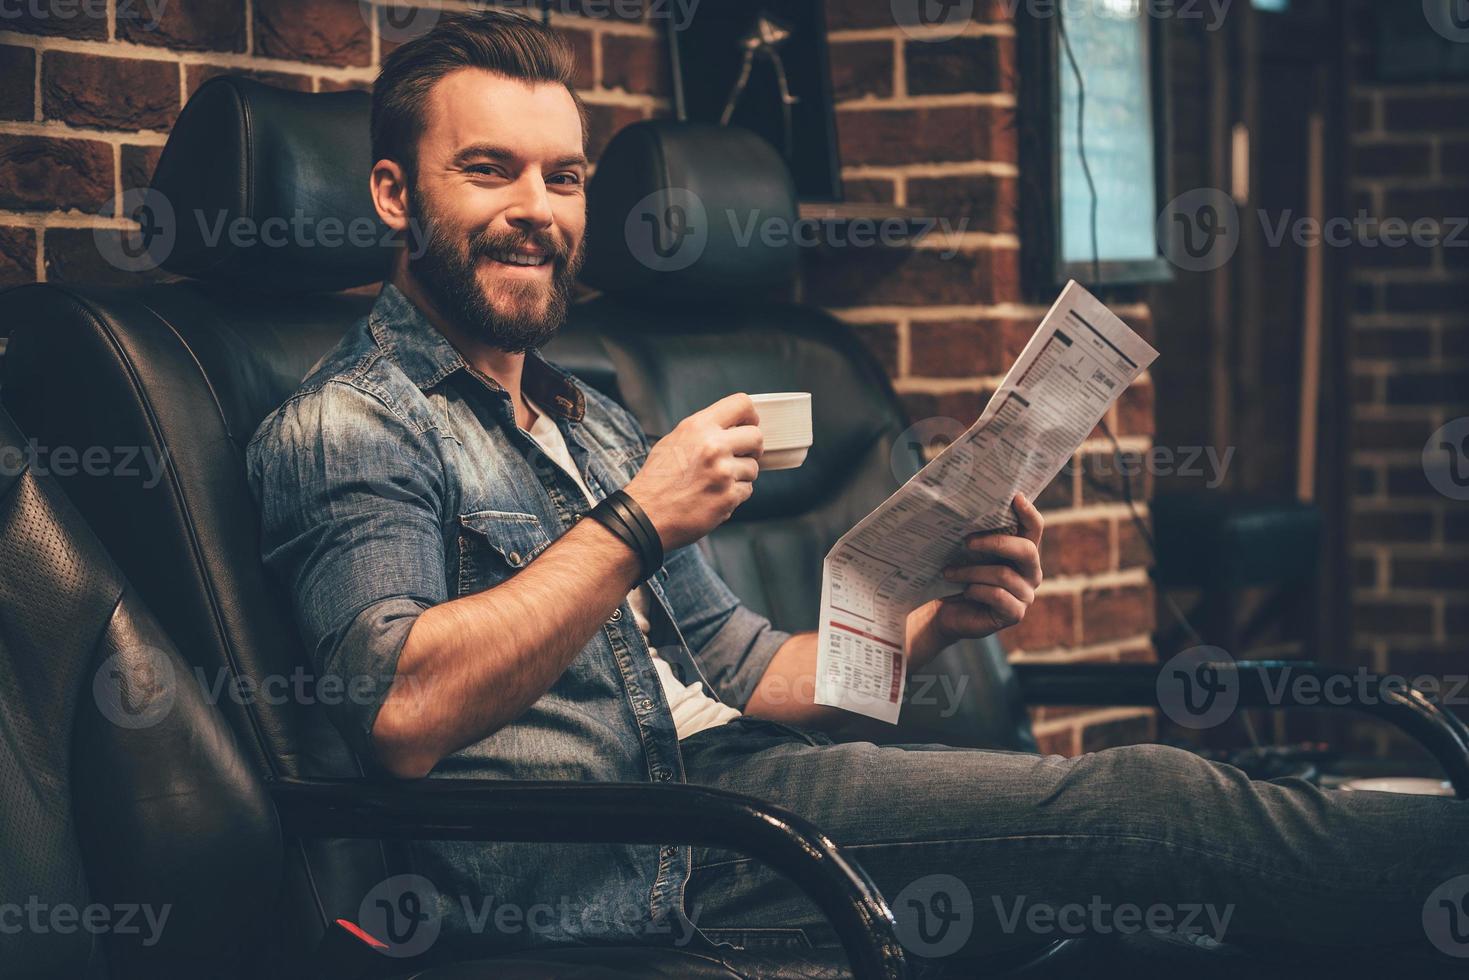 agora este é o serviço bonito jovem barbudo olhando para a câmera com um sorriso e segurando a xícara de café e jornal enquanto está sentado em uma cadeira confortável na barbearia foto